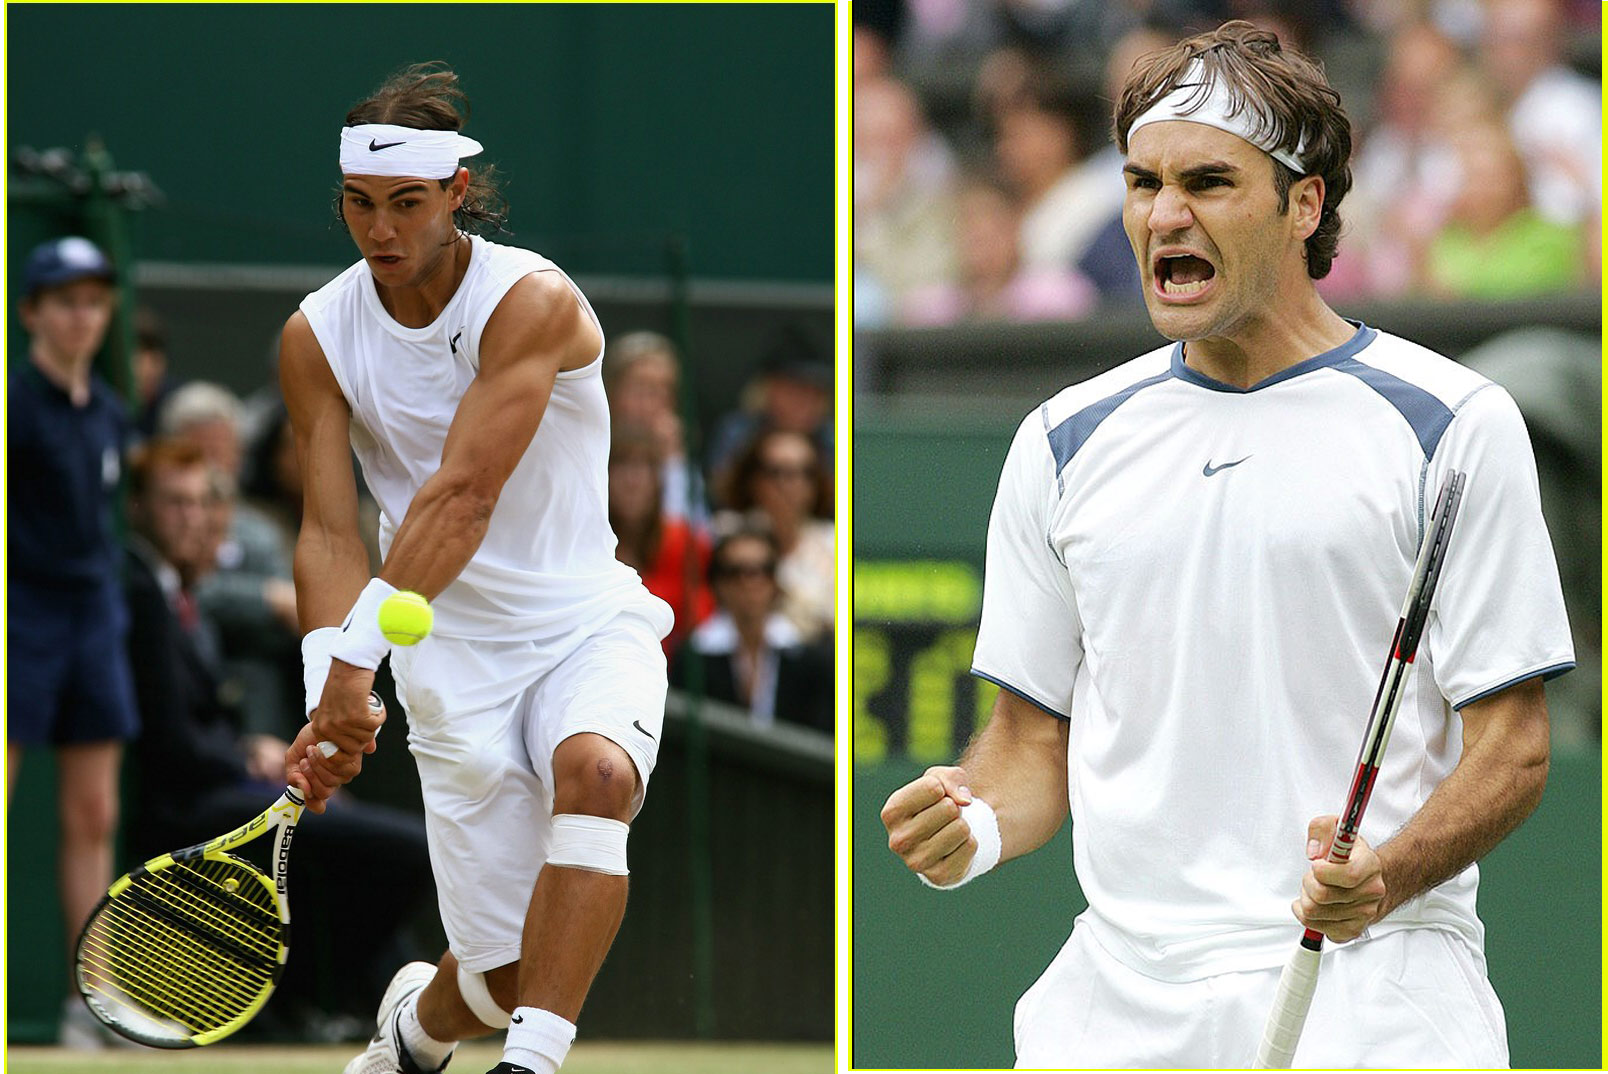 Siêu kinh điển Federer - Nadal: 10 năm trận đấu thiên niên kỷ (Chung kết Wimbledon 2008) - 15